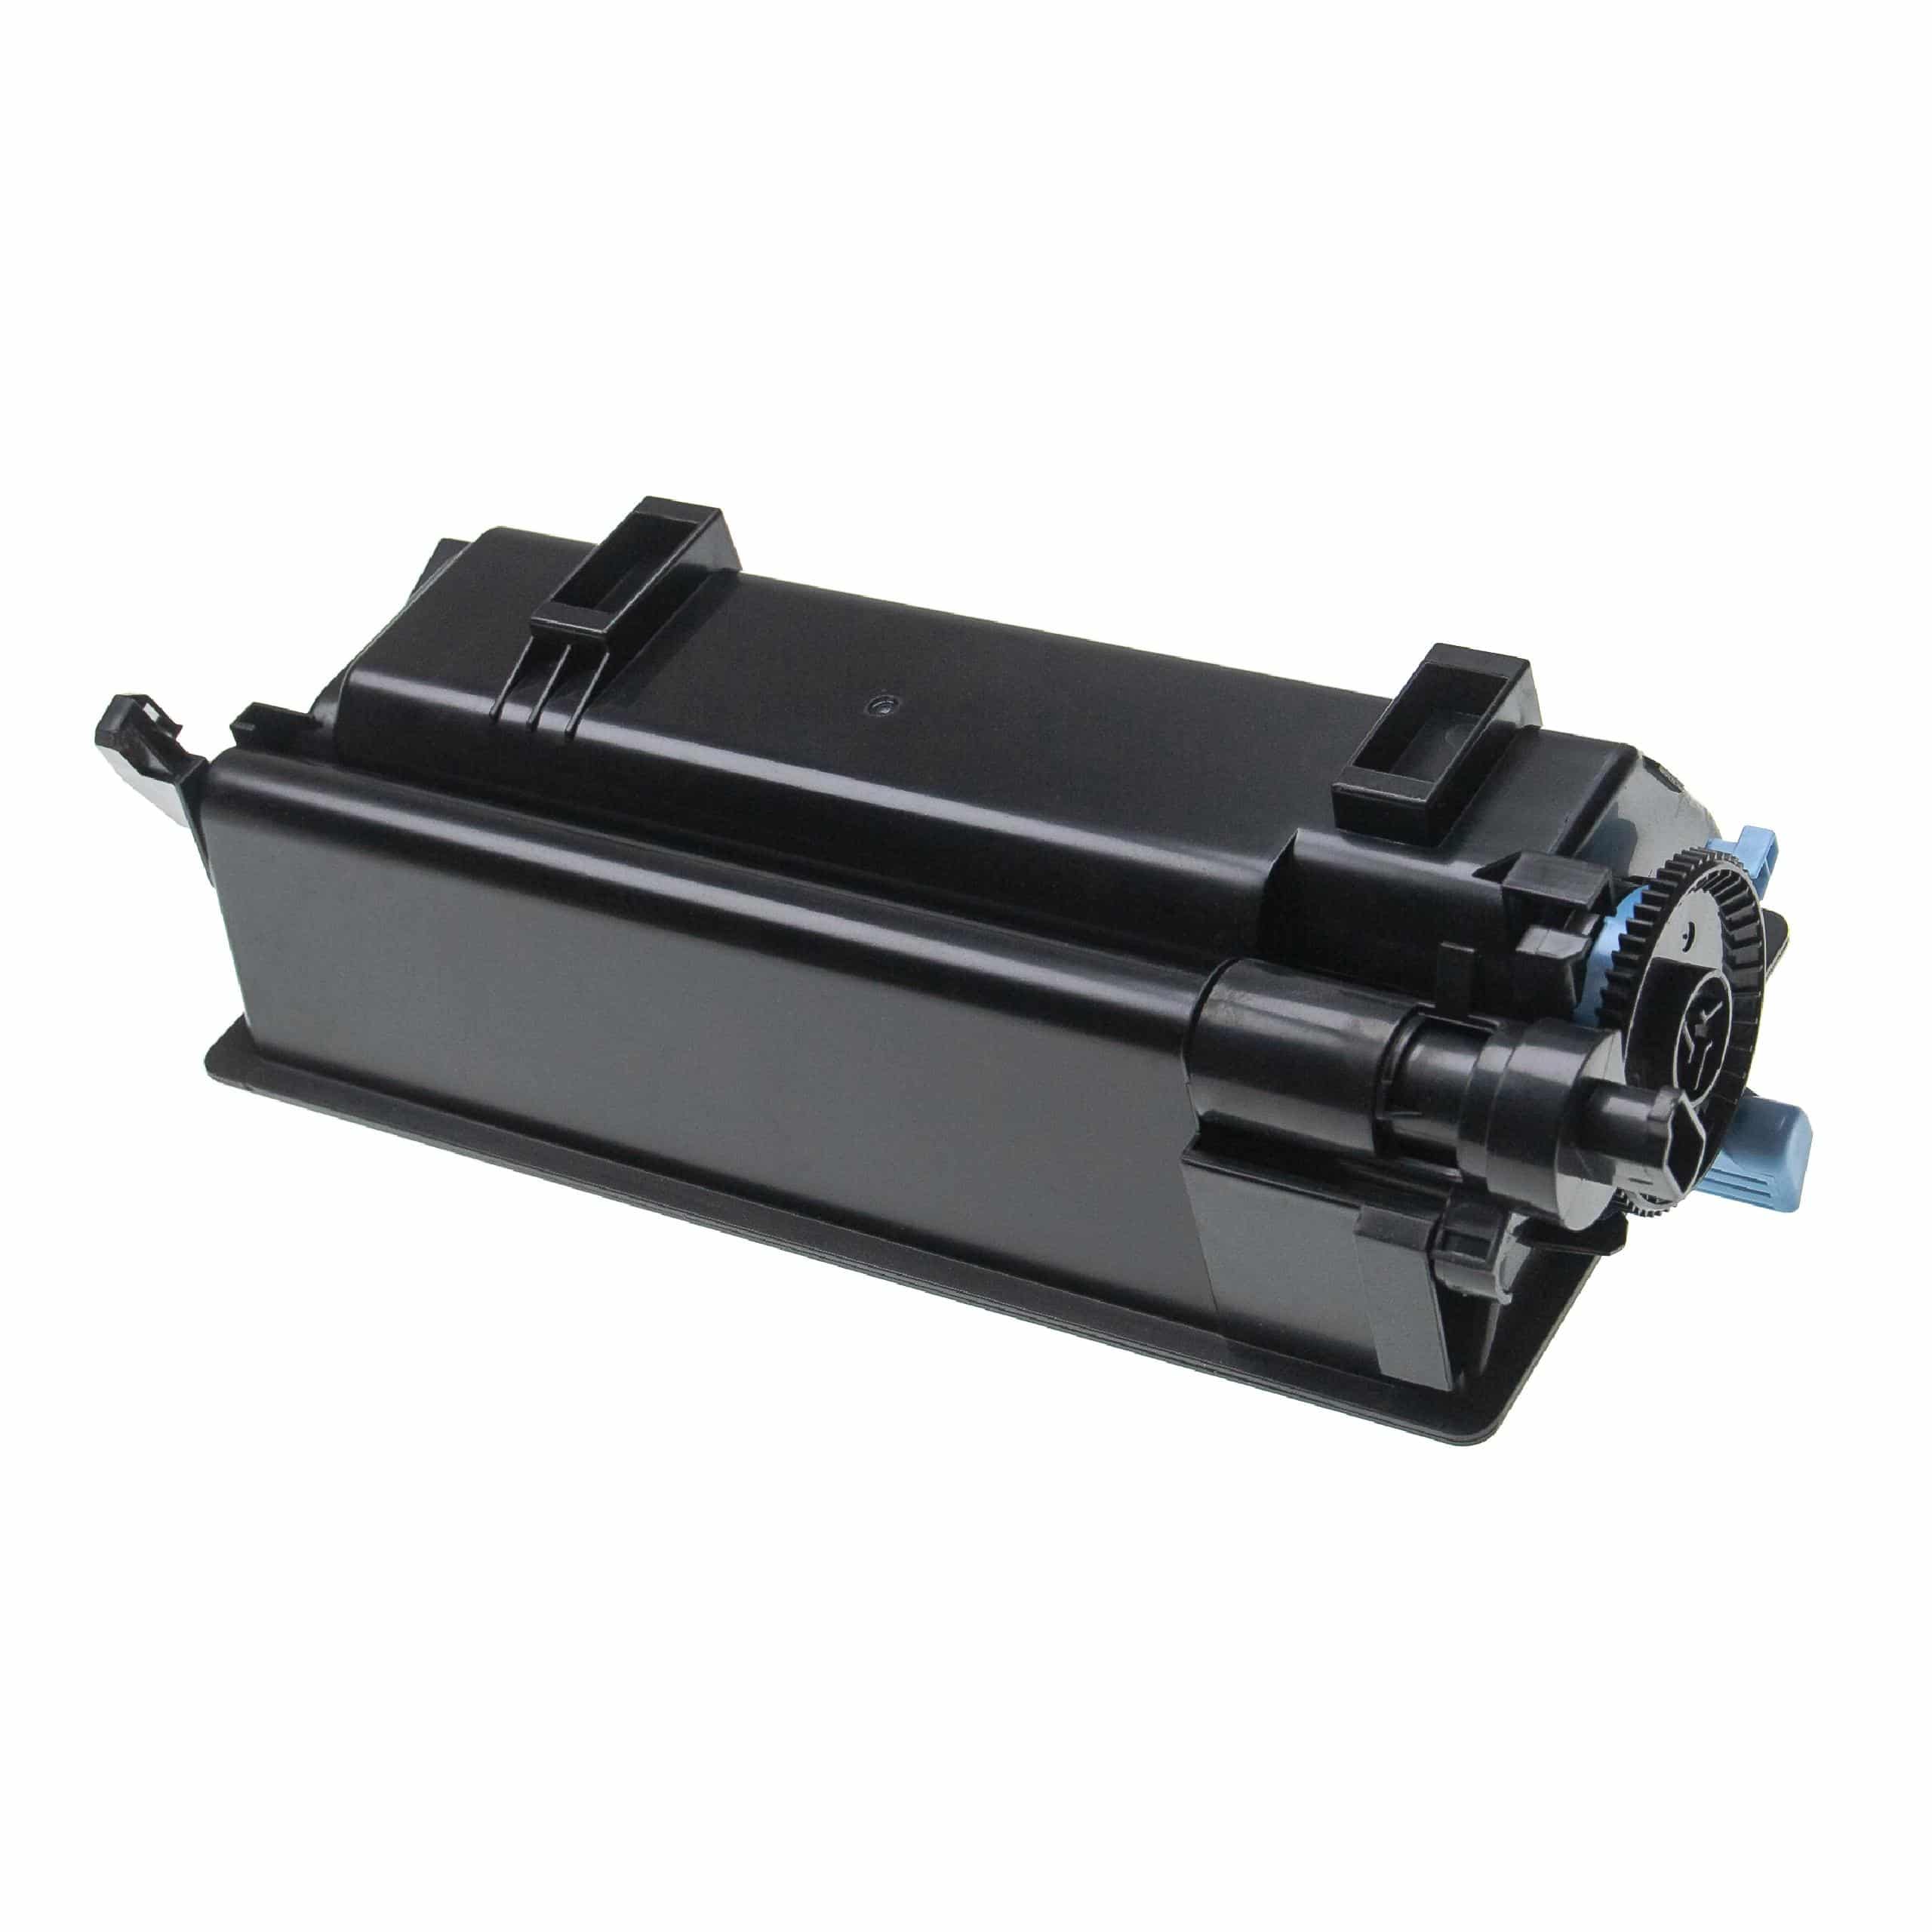 5x Cartouches de toner remplace Kyocera TK-3160 pour imprimante laser Kyocera + récupérateur, noir